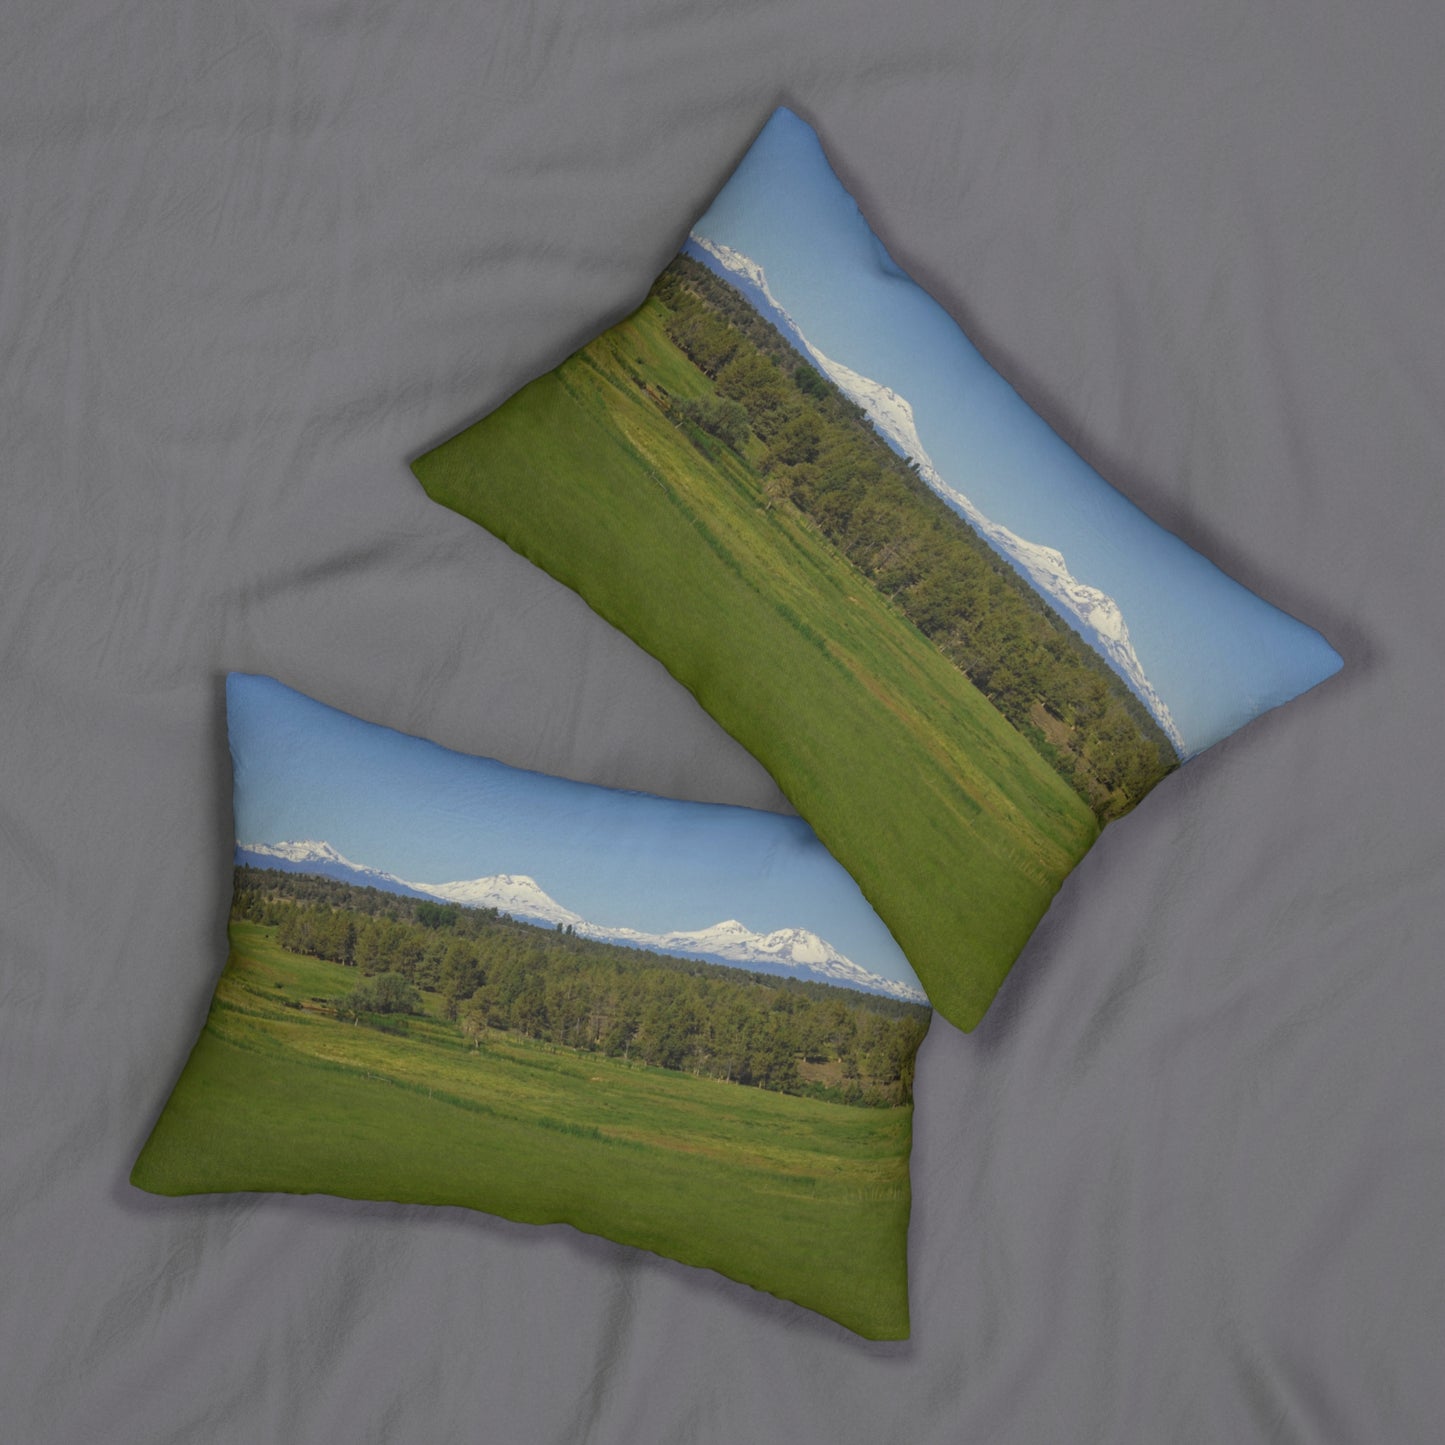 Mountain Meadow Spun Polyester Lumbar Pillow